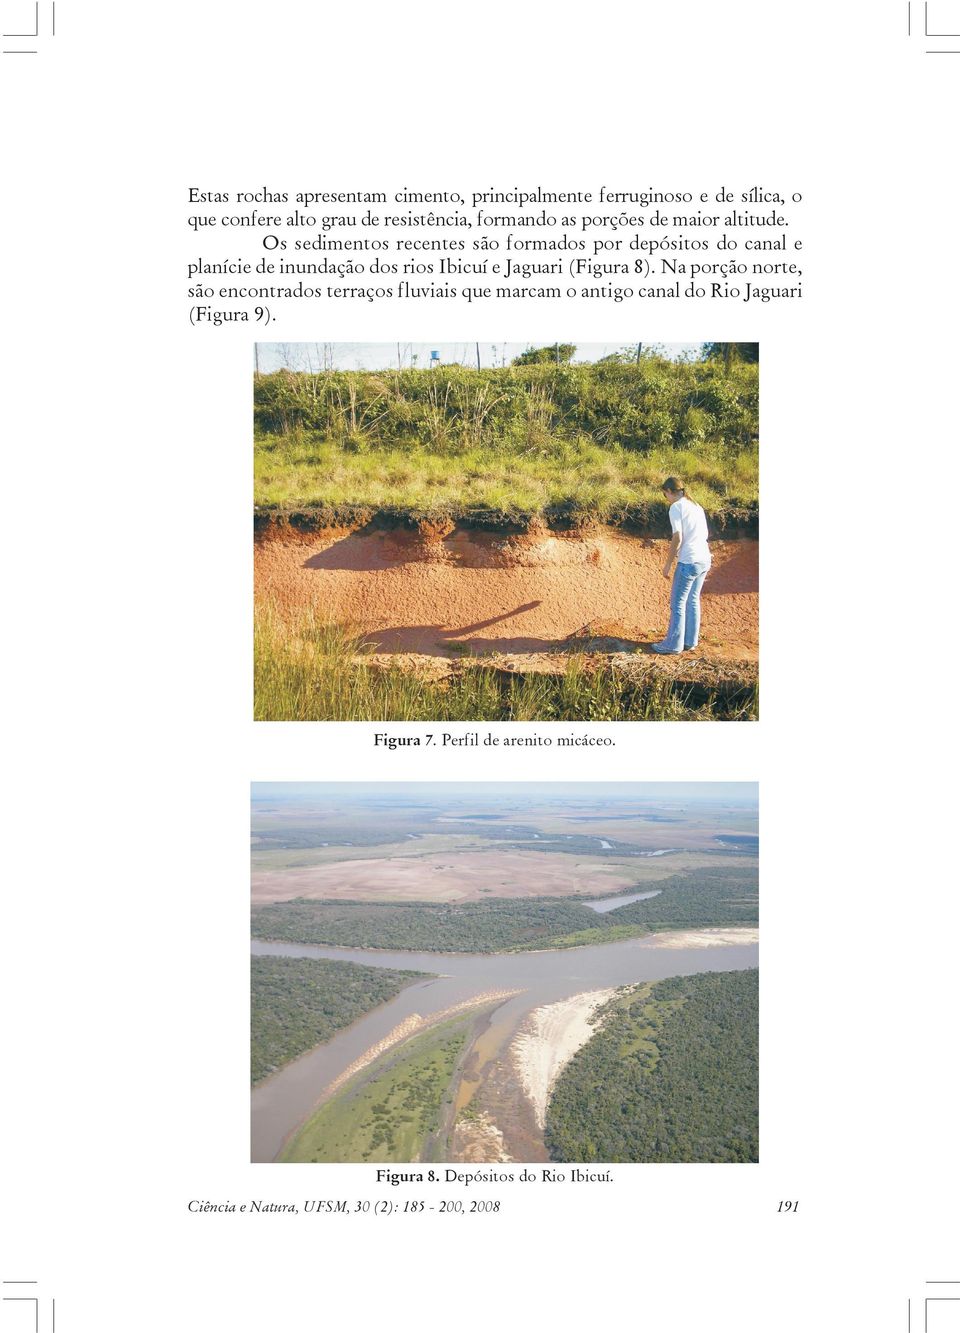 Os sedimentos recentes são formados por depósitos do canal e planície de inundação dos rios Ibicuí e Jaguari (Figura 8).